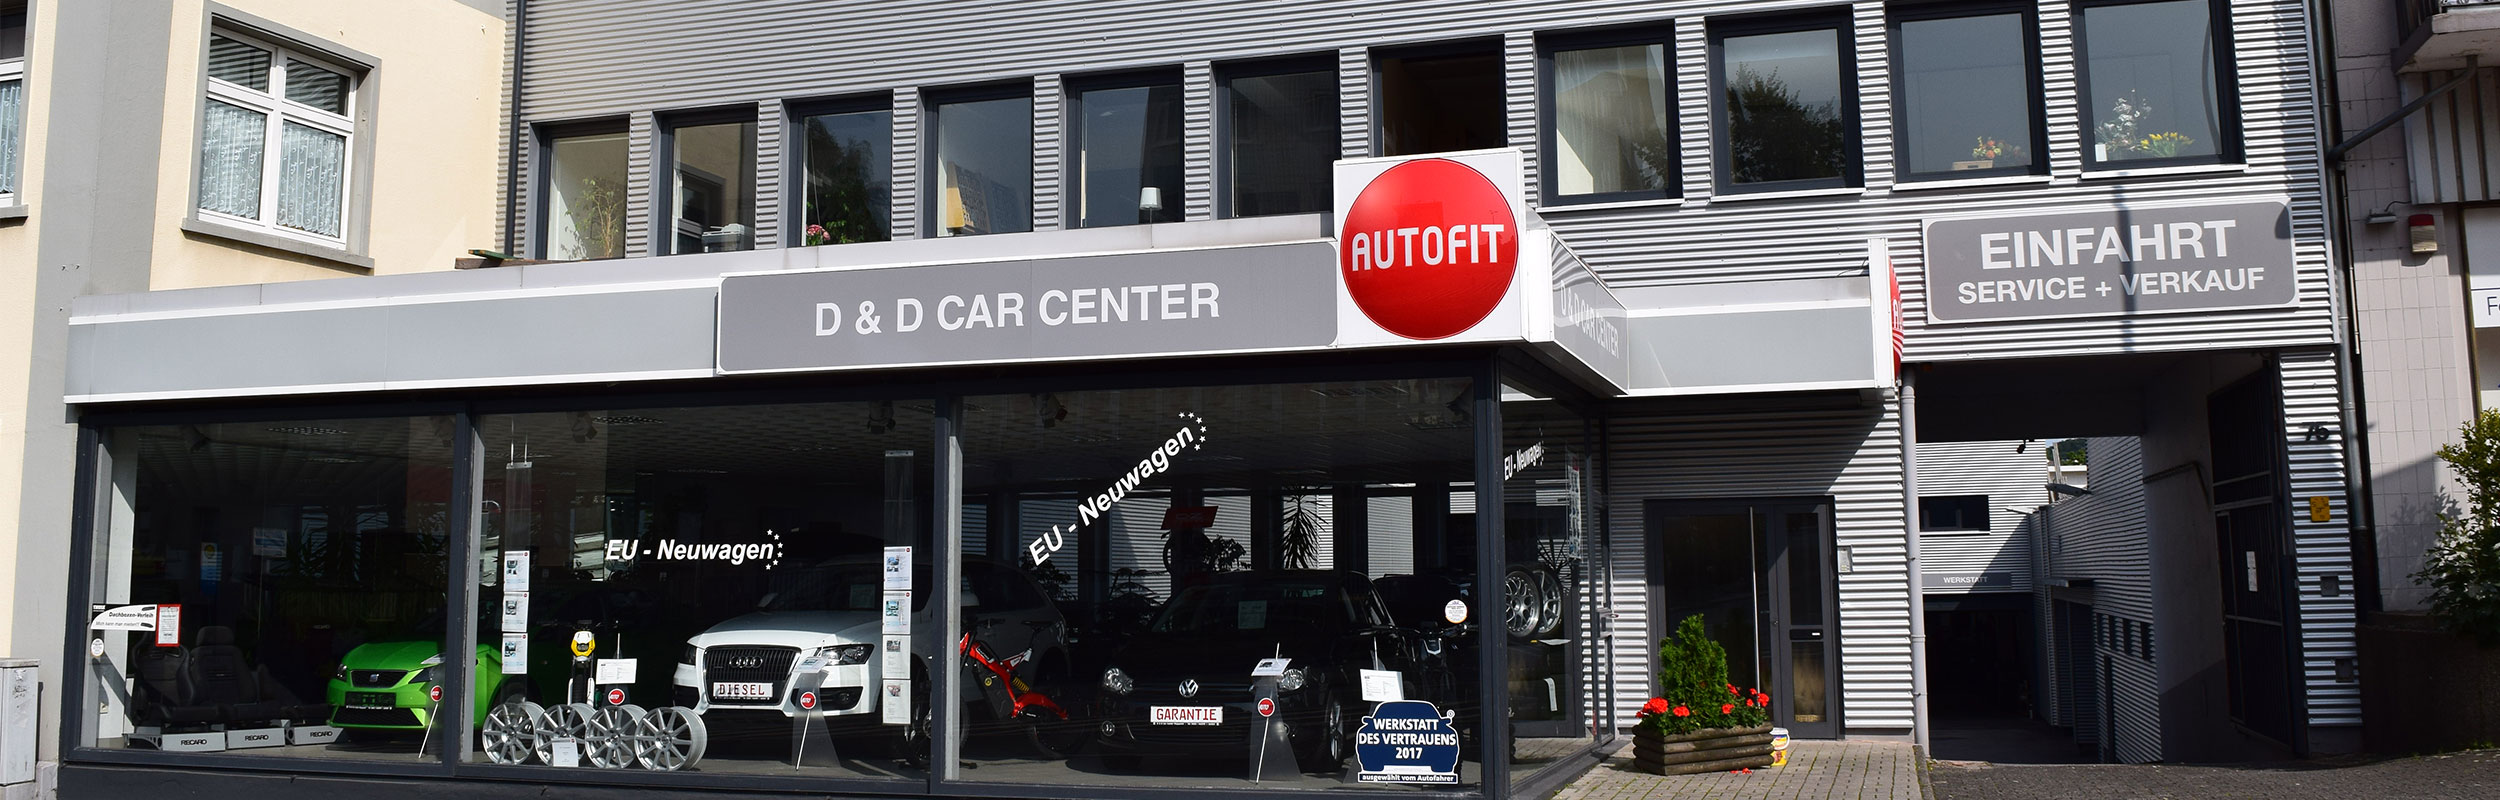 D & D Carcenter - Autoreparatur Wuppertal, KFZ Werkstatt, Karosseriewerkstatt